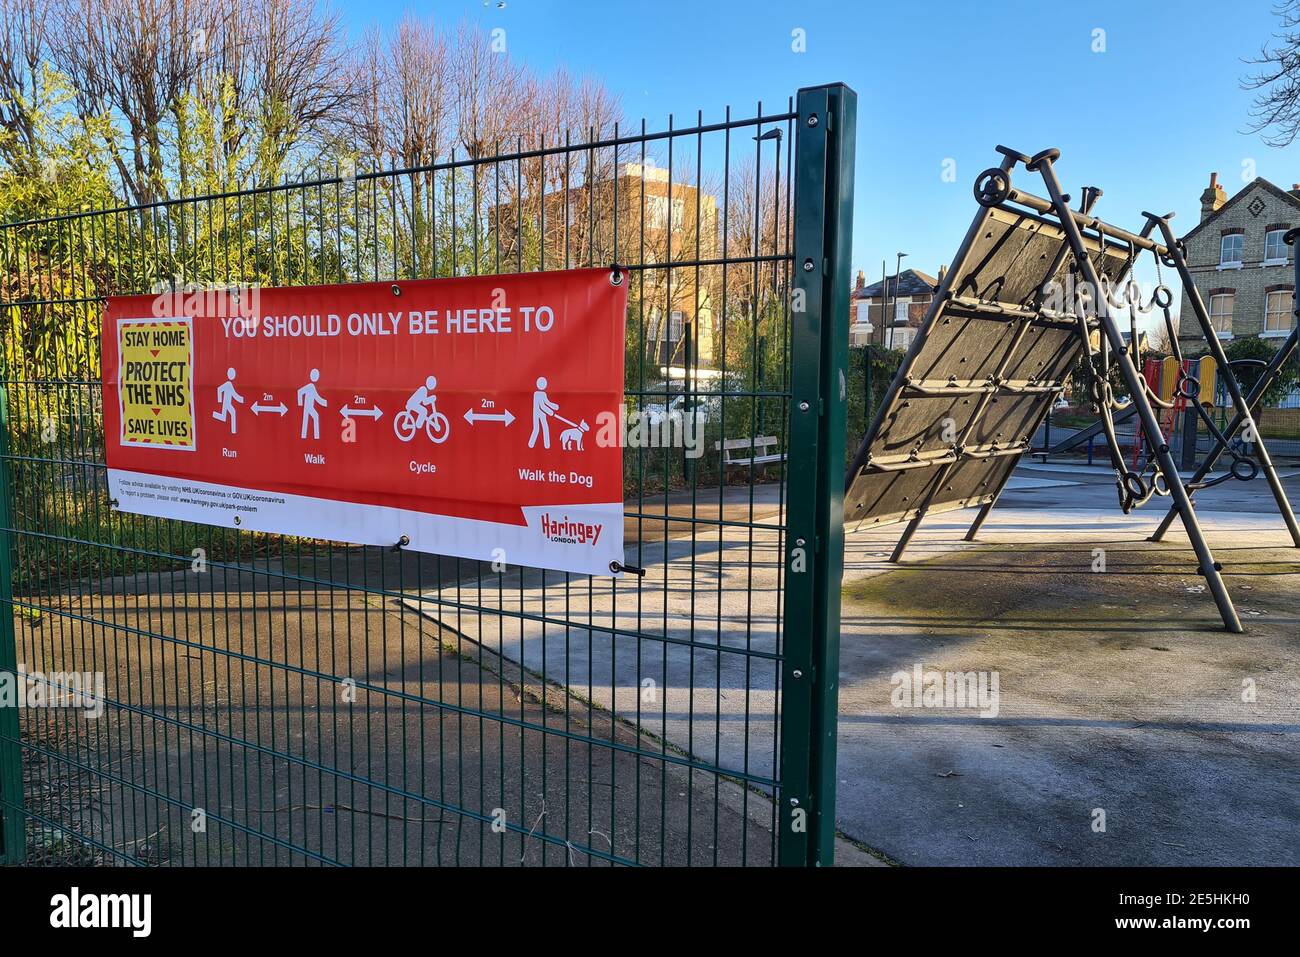 Une bannière d'information sur le confinement de Covid-19 du gouvernement dans un parc informant le public des règles de l'exercice extérieur. Banque D'Images